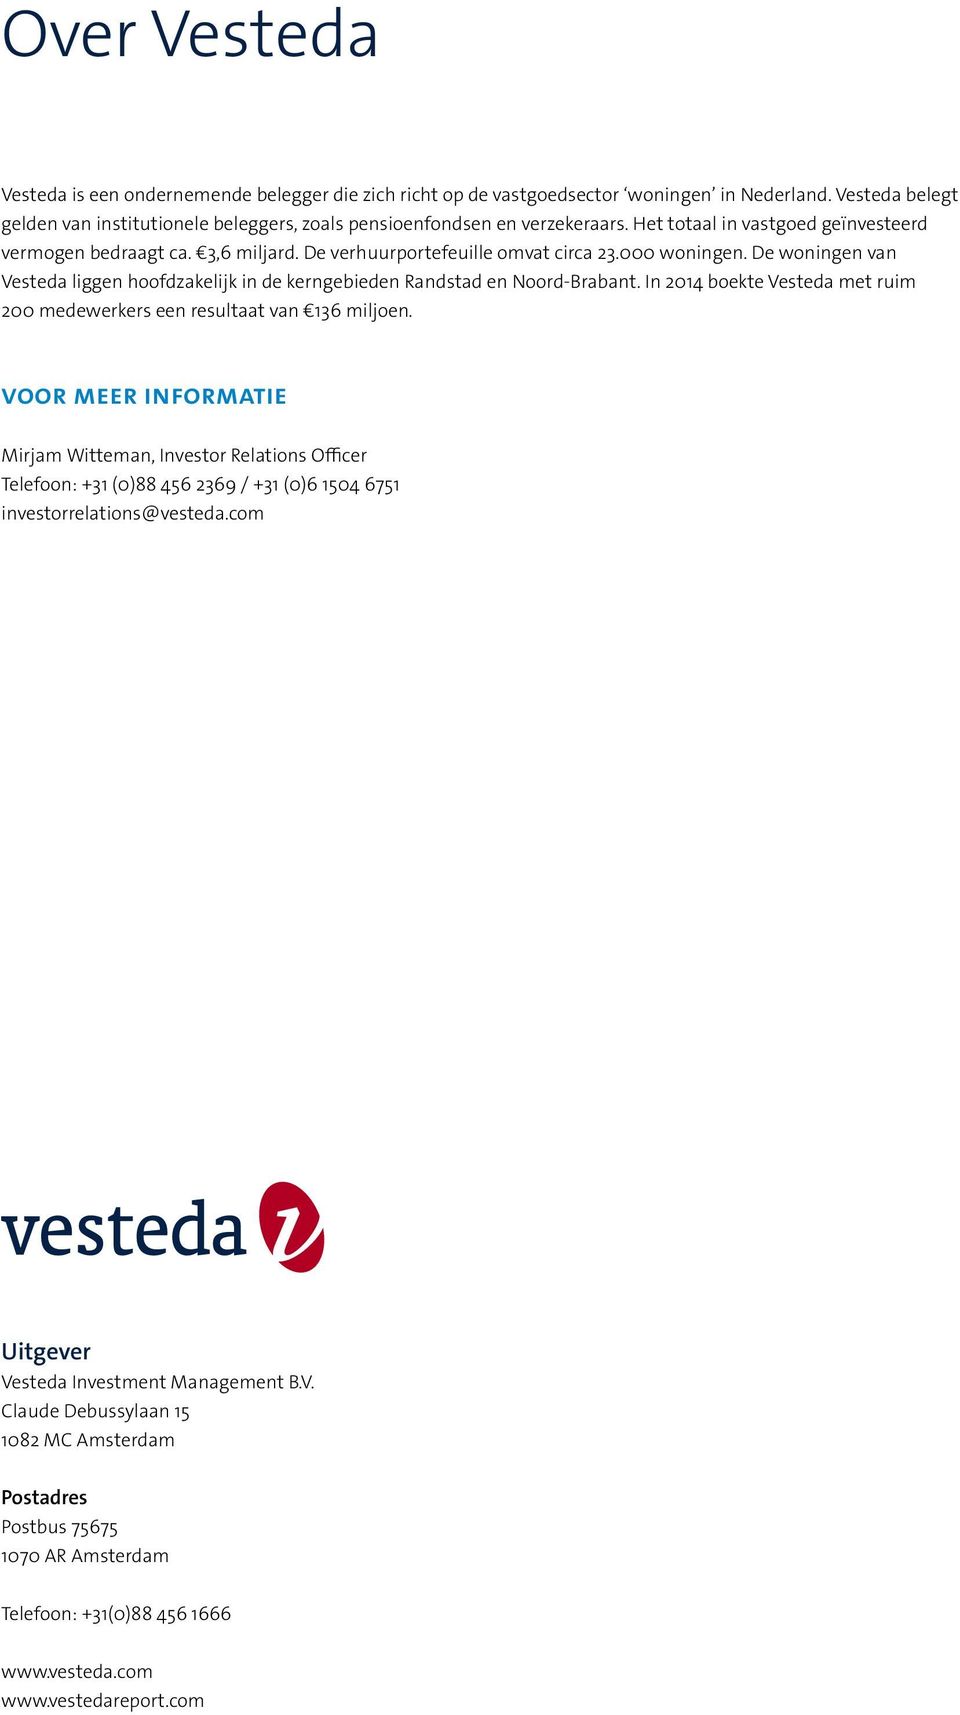 De woningen van Vesteda liggen hoofdzakelijk in de kerngebieden Randstad en Noord-Brabant. In 2014 boekte Vesteda met ruim 200 medewerkers een resultaat van 136 miljoen.